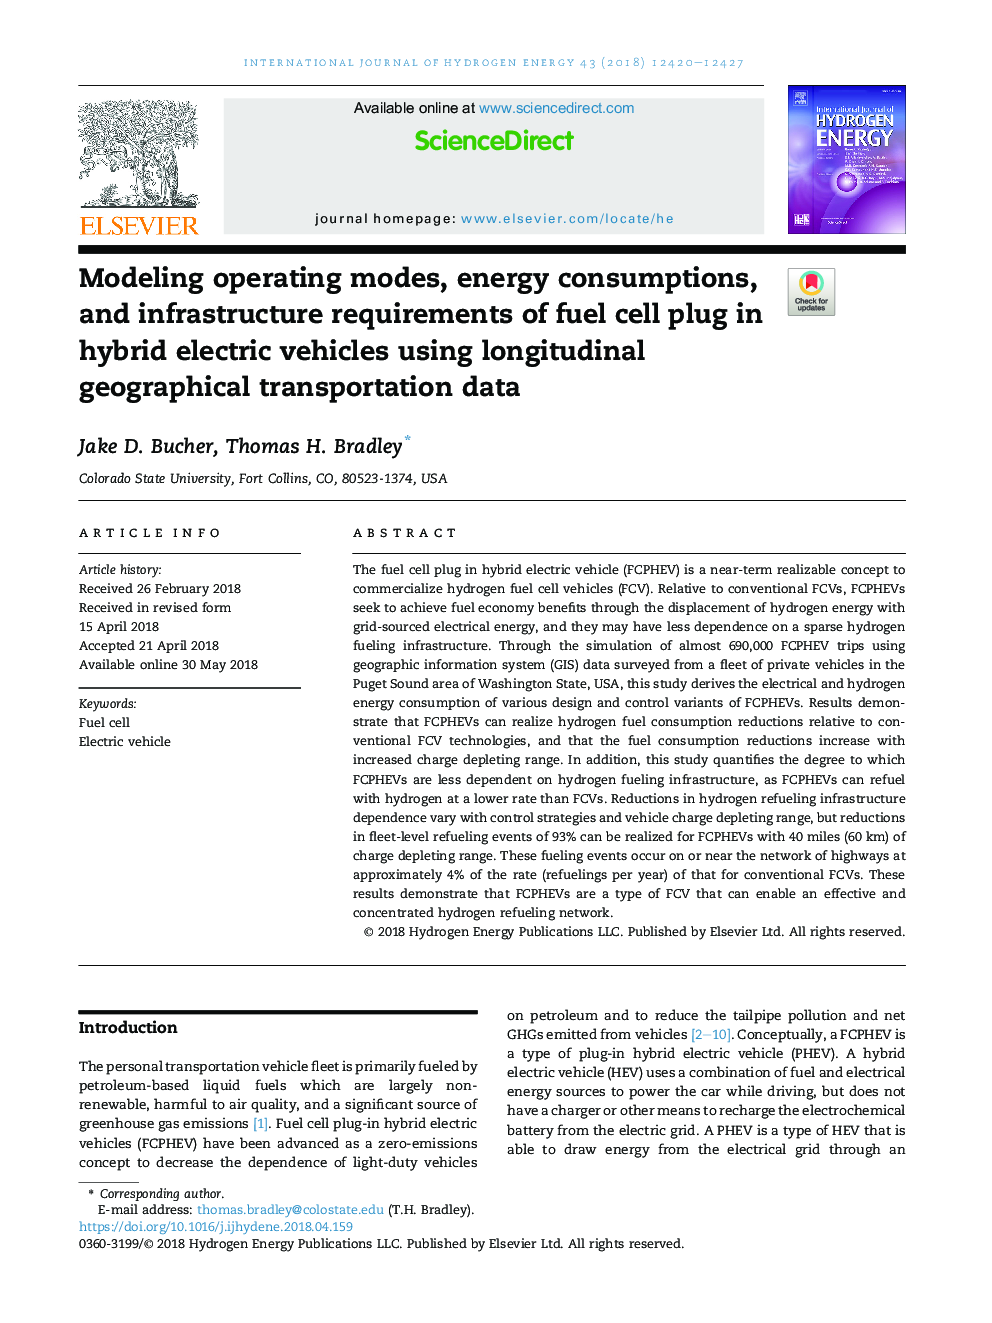 مدل سازی حالت های عملیاتی، مصرف انرژی و الزامات زیربنایی مربوط به پلاگین سلول سوخت در خودروهای الکتریکی هیبریدی با استفاده از داده های طول جغرافیایی حمل و نقل 